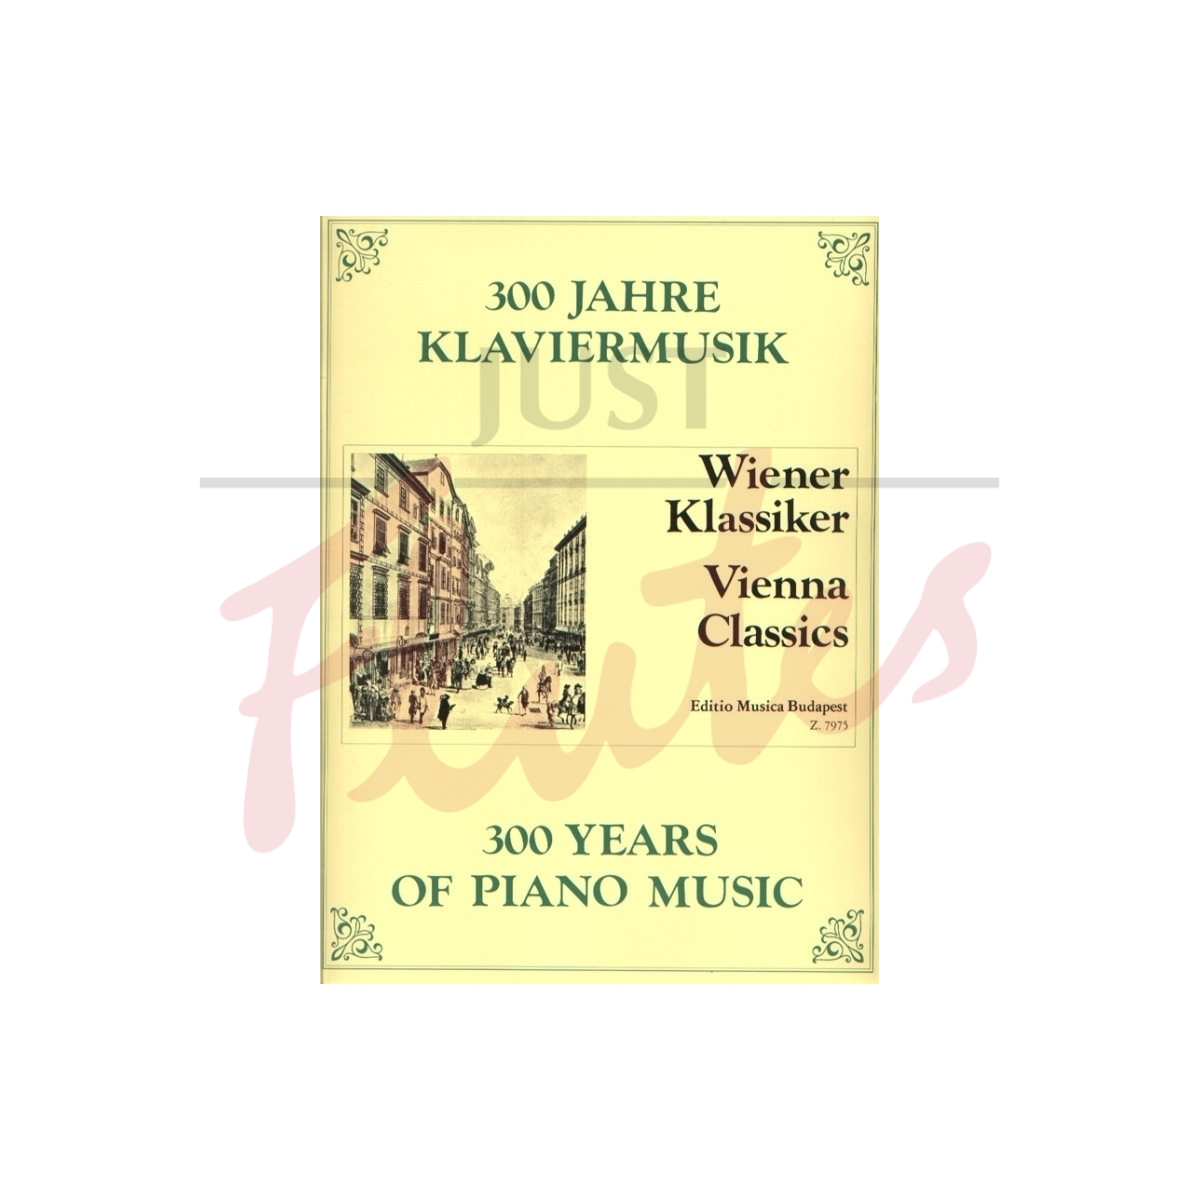 300 Years Of Piano Music: Vienna Classics